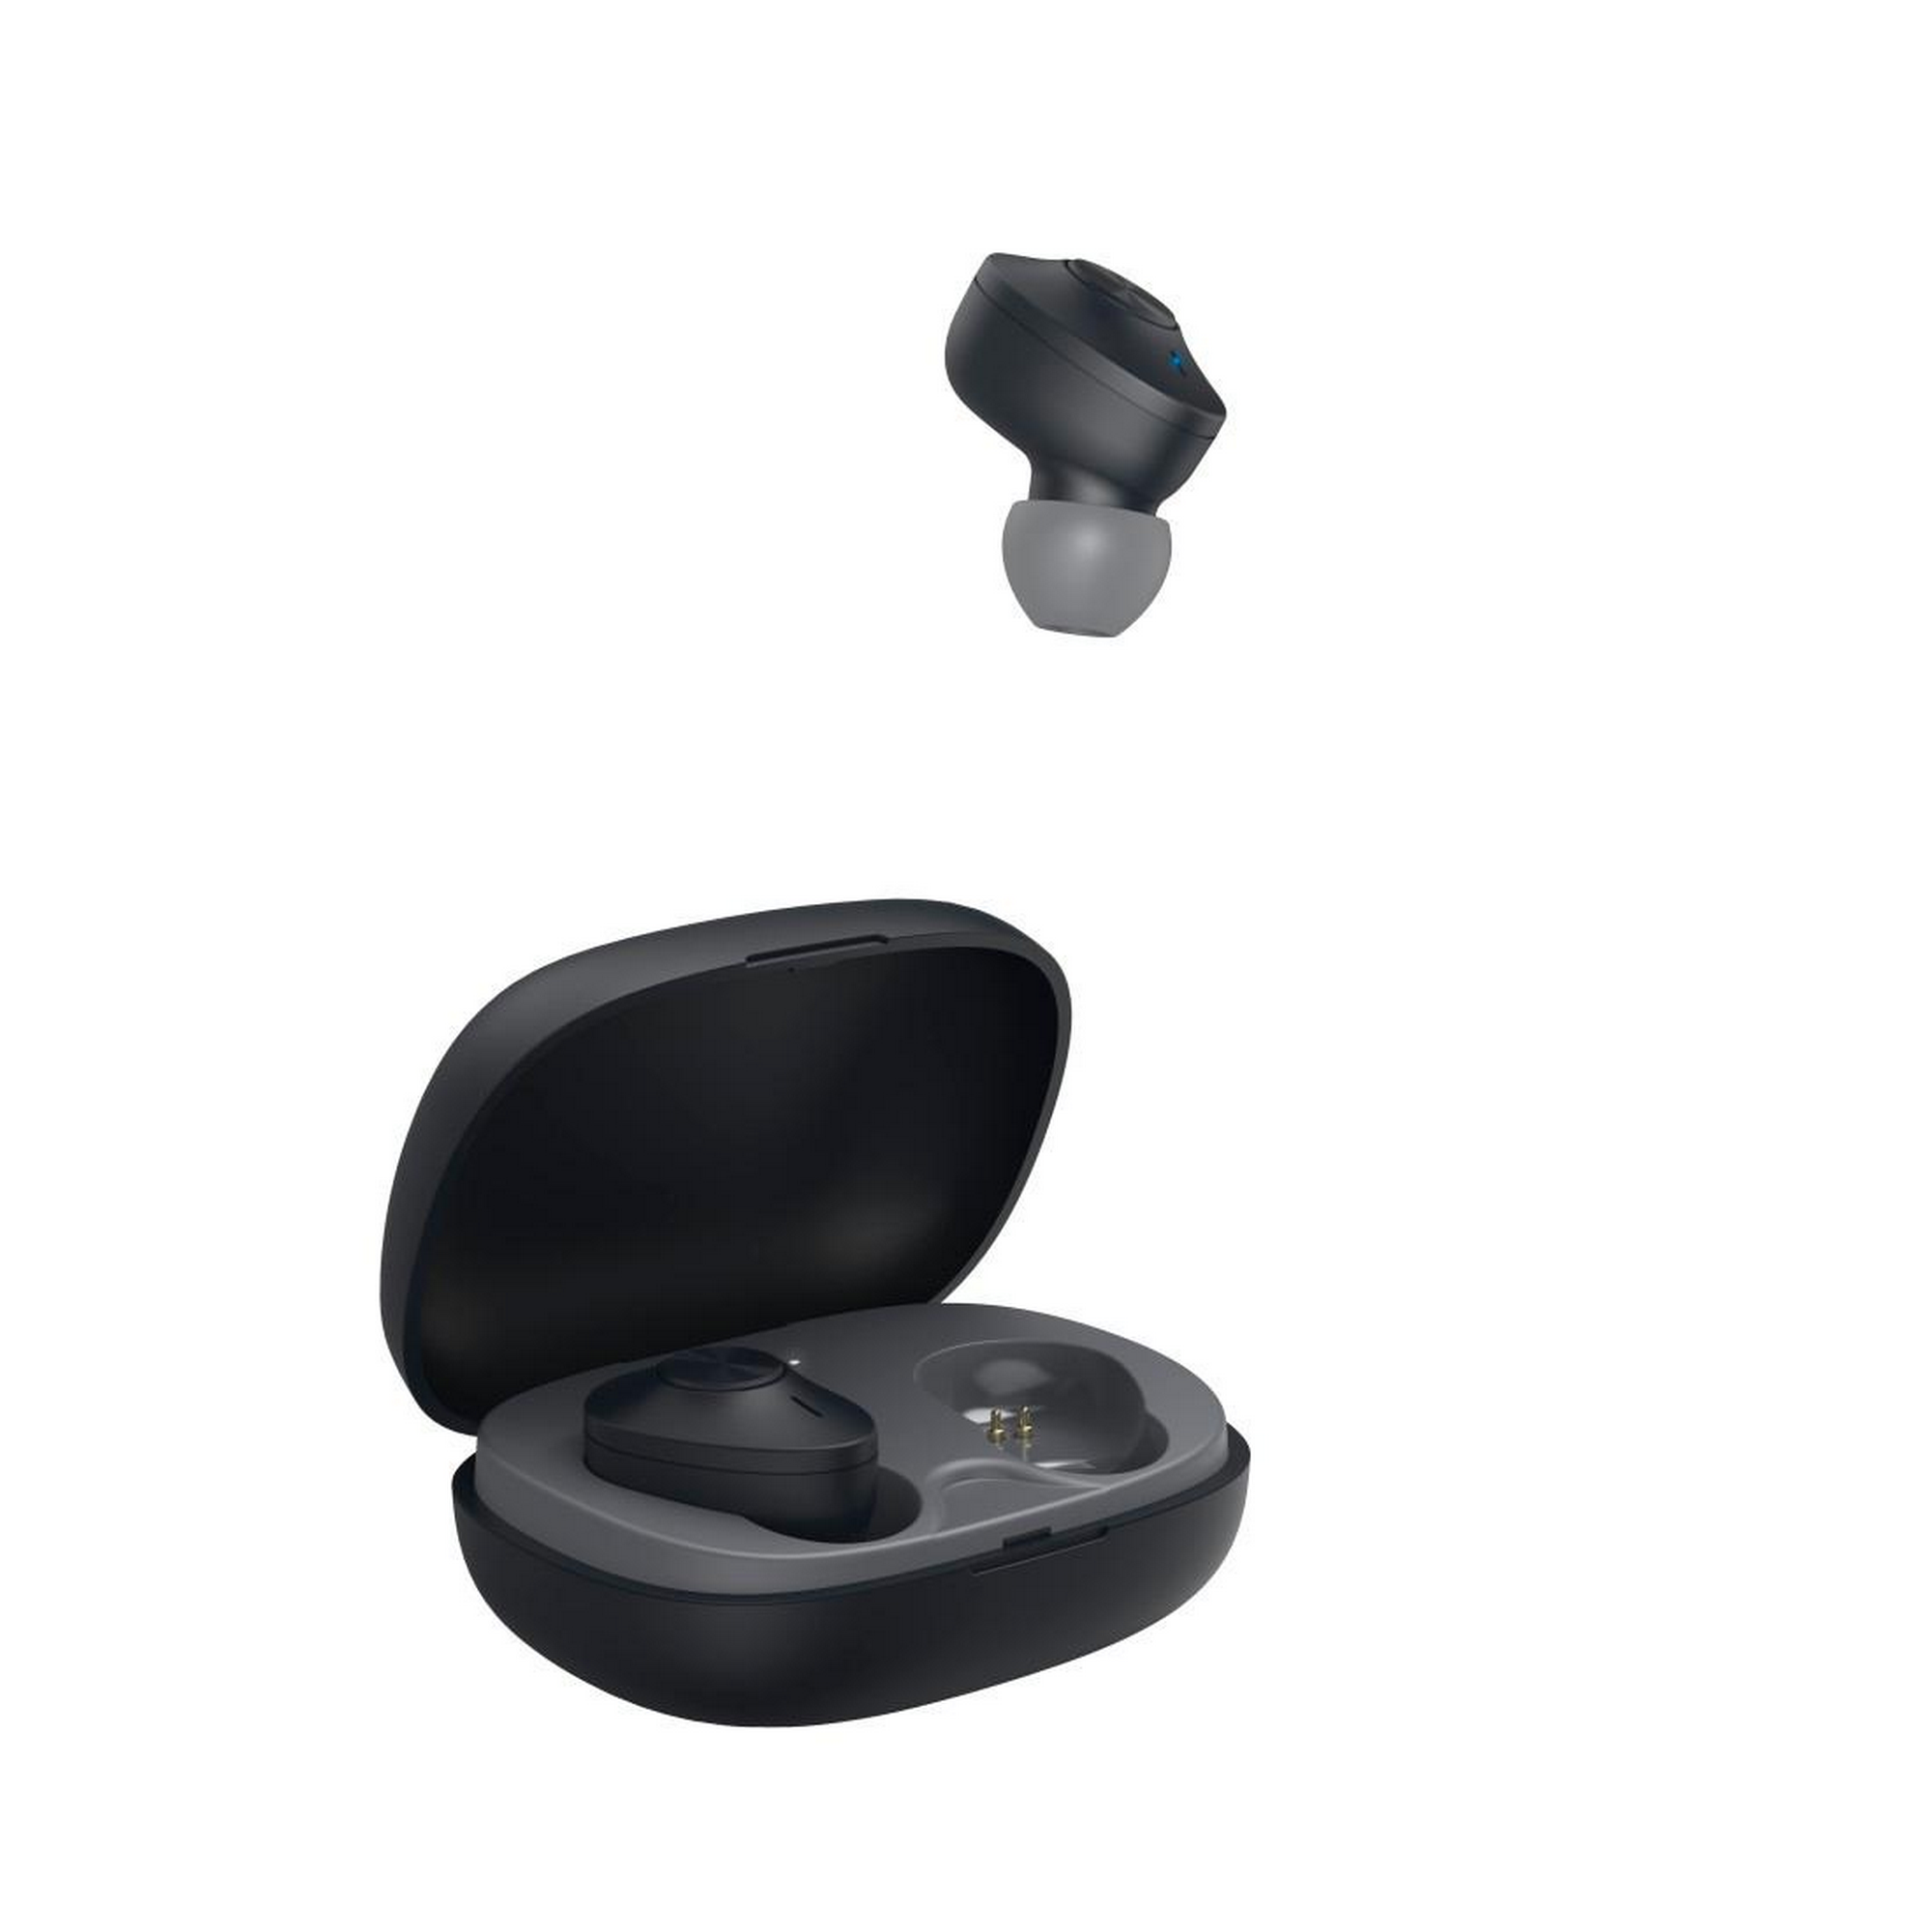 Bluetooth In-Ear-Kopfhörer 'Freedom Buddy' schwarz, True Wireless + product picture